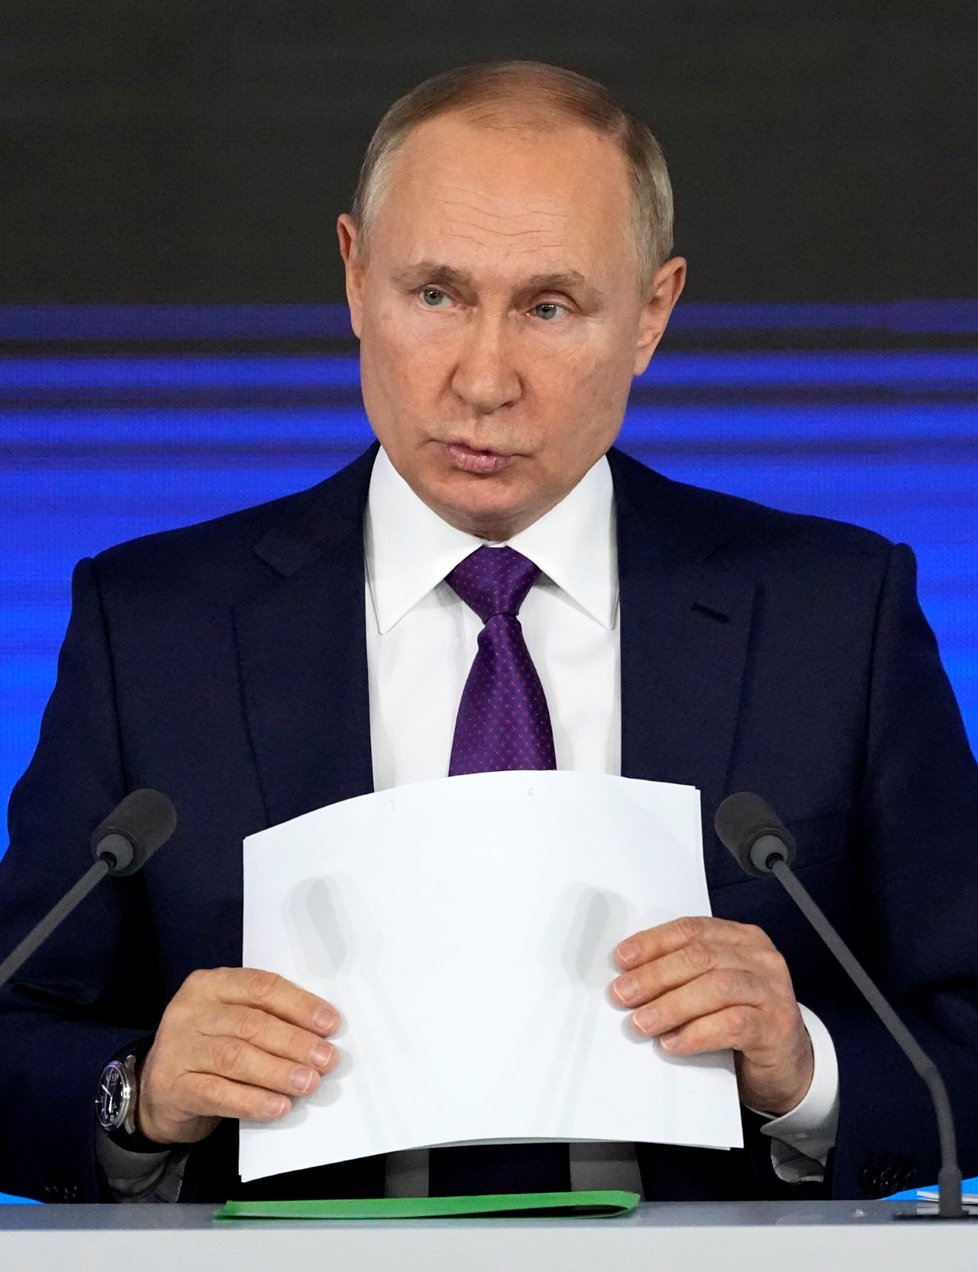 Ruský prezident Vladimir Putin na své výroční tiskové konferenci (23. 12. 2021)